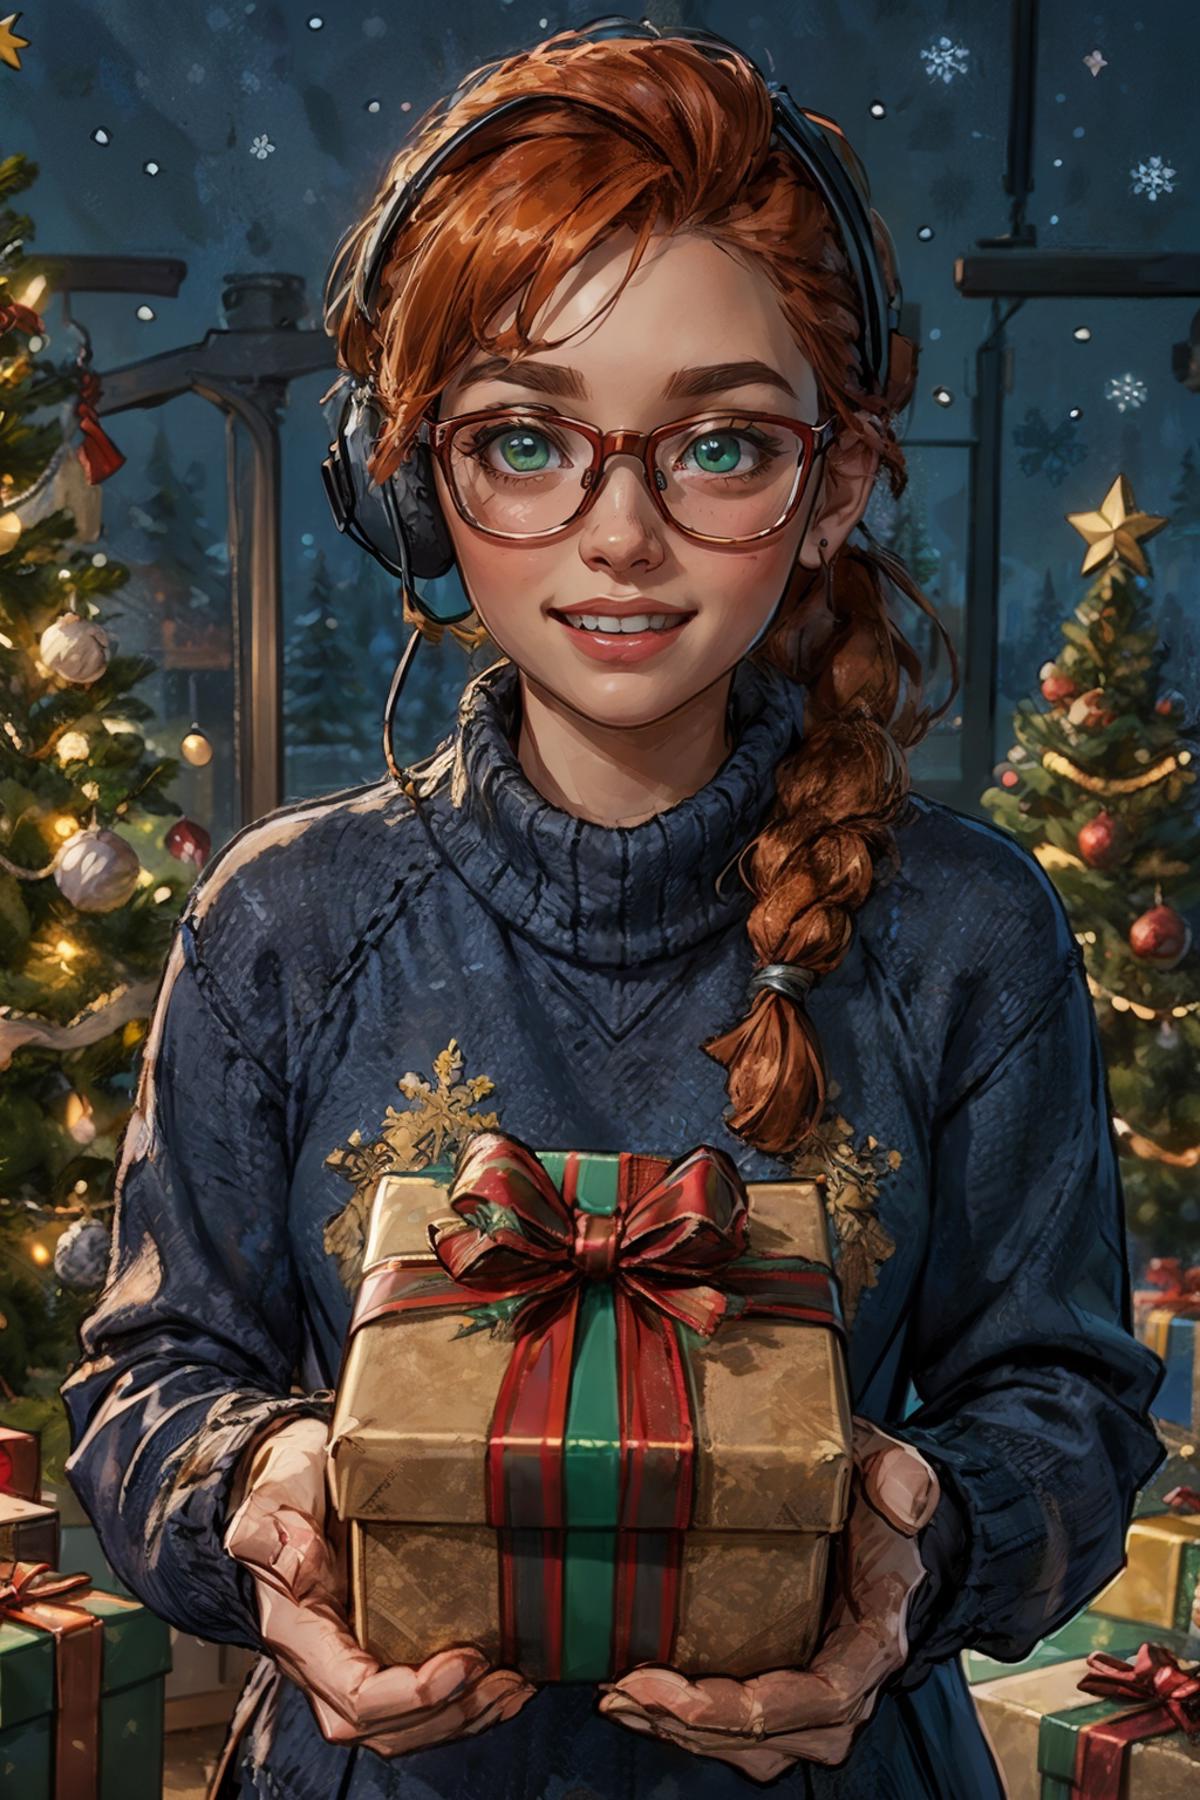 Happy Christmas image by wikkitikki